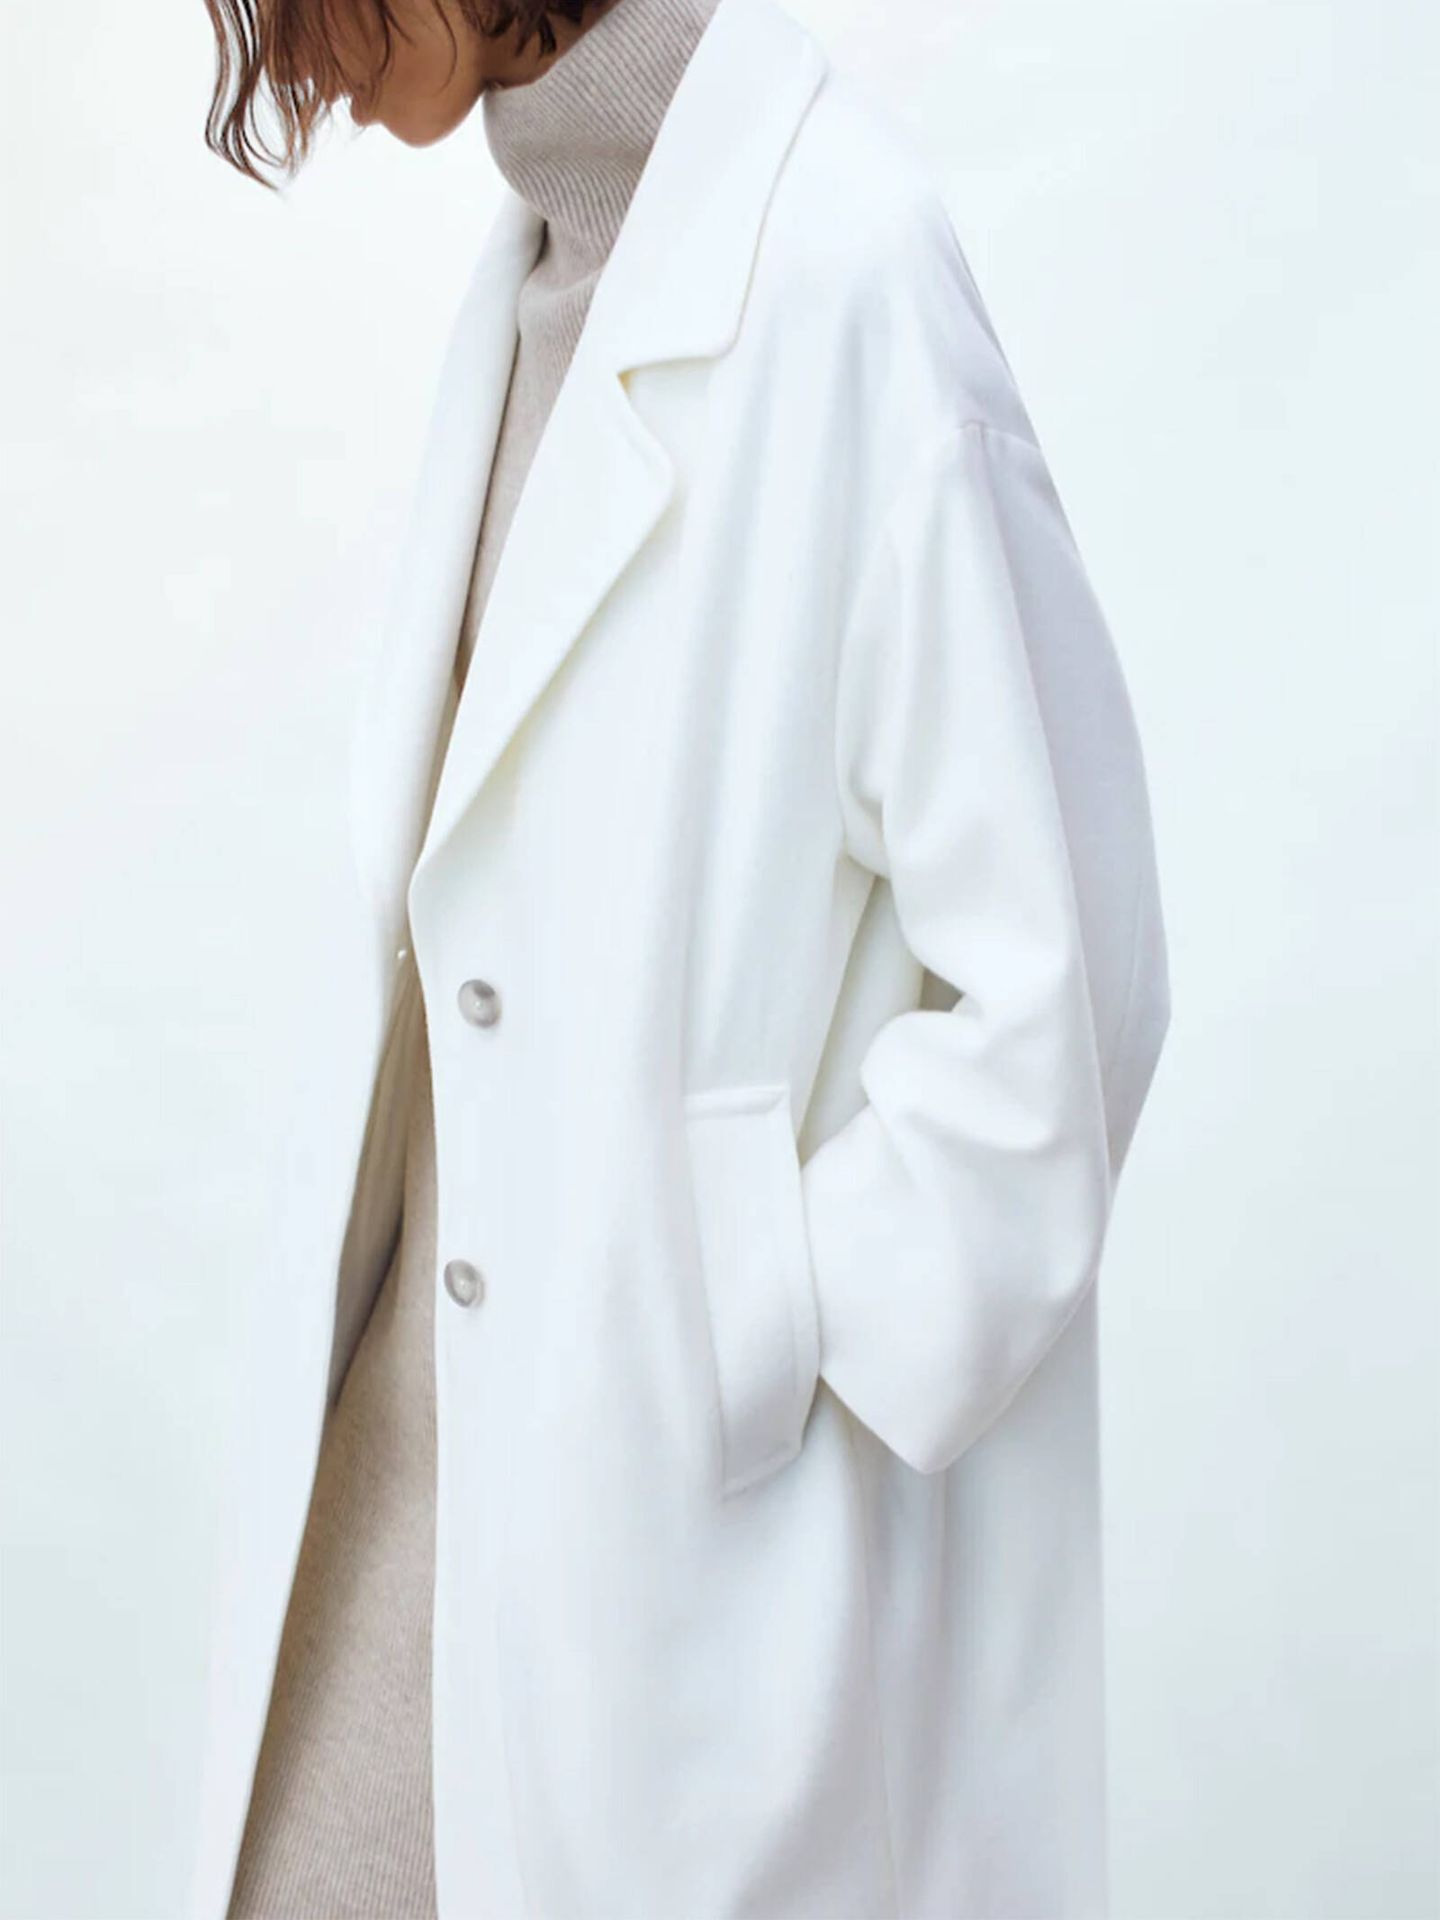 El abrigo blanco de Massimo Dutti para looks elegantes y con estilo. (Cortesía)